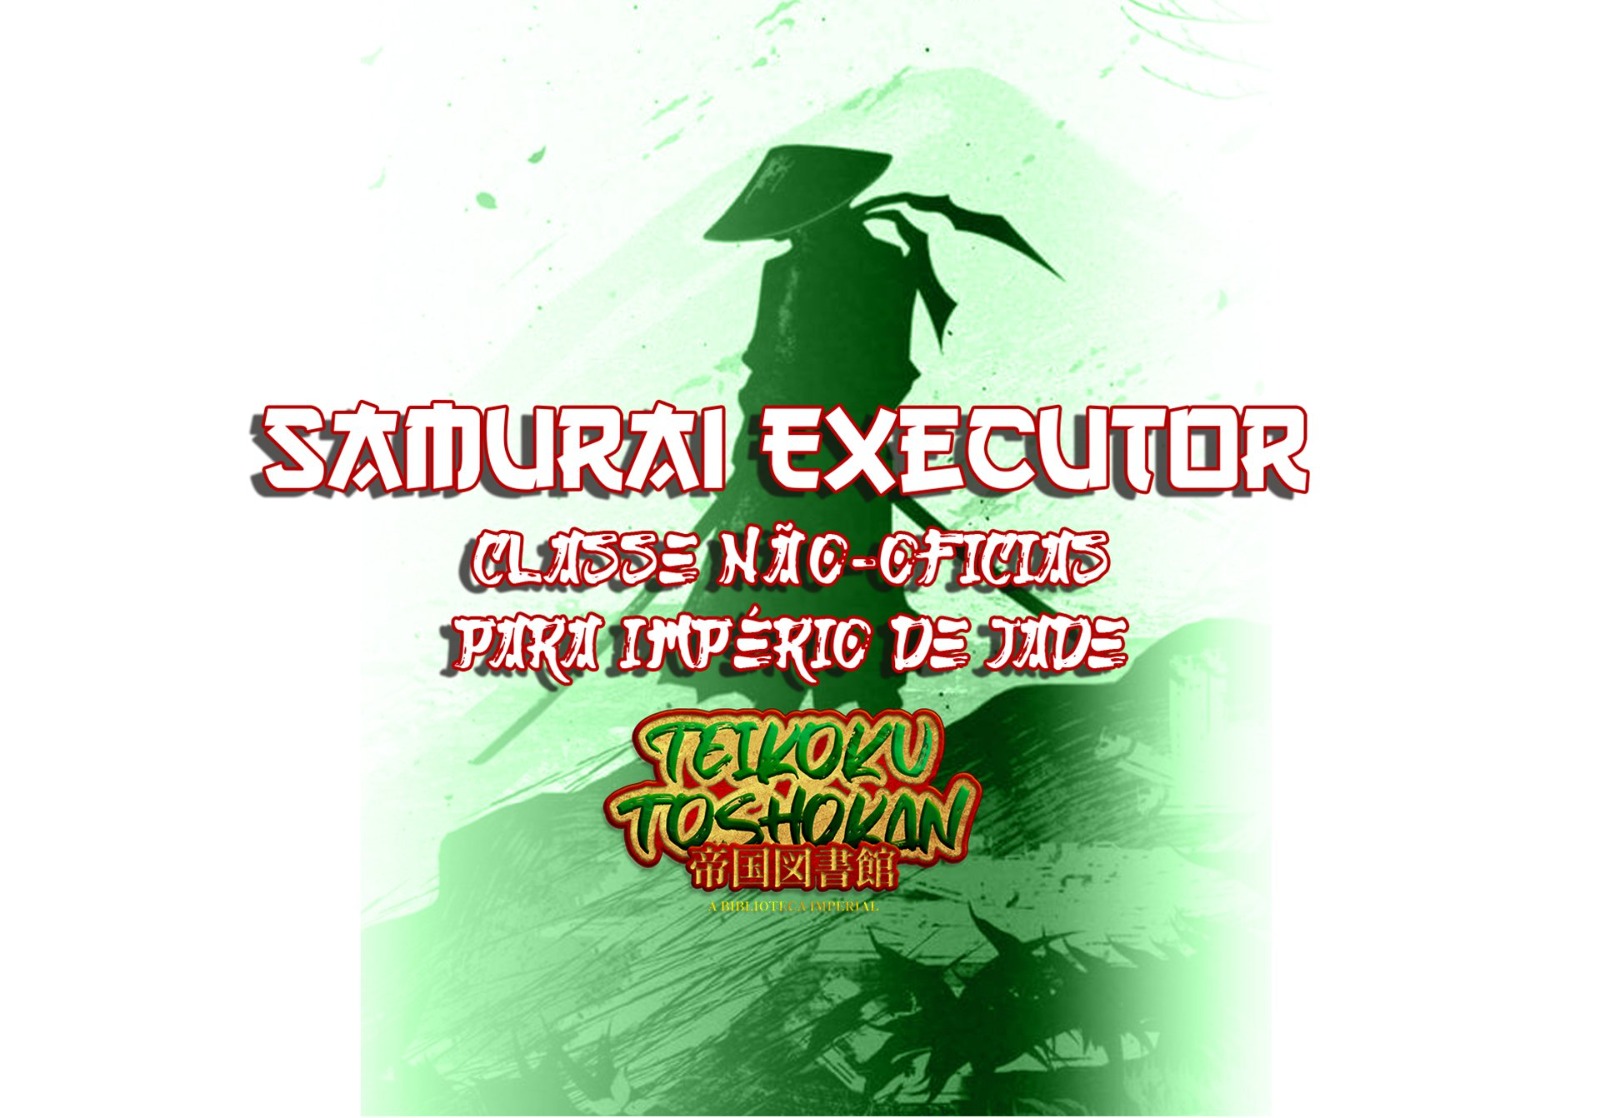 Samurai Executor – Classes Não-Oficias Para Império de Jade – Teikoku Toshokan